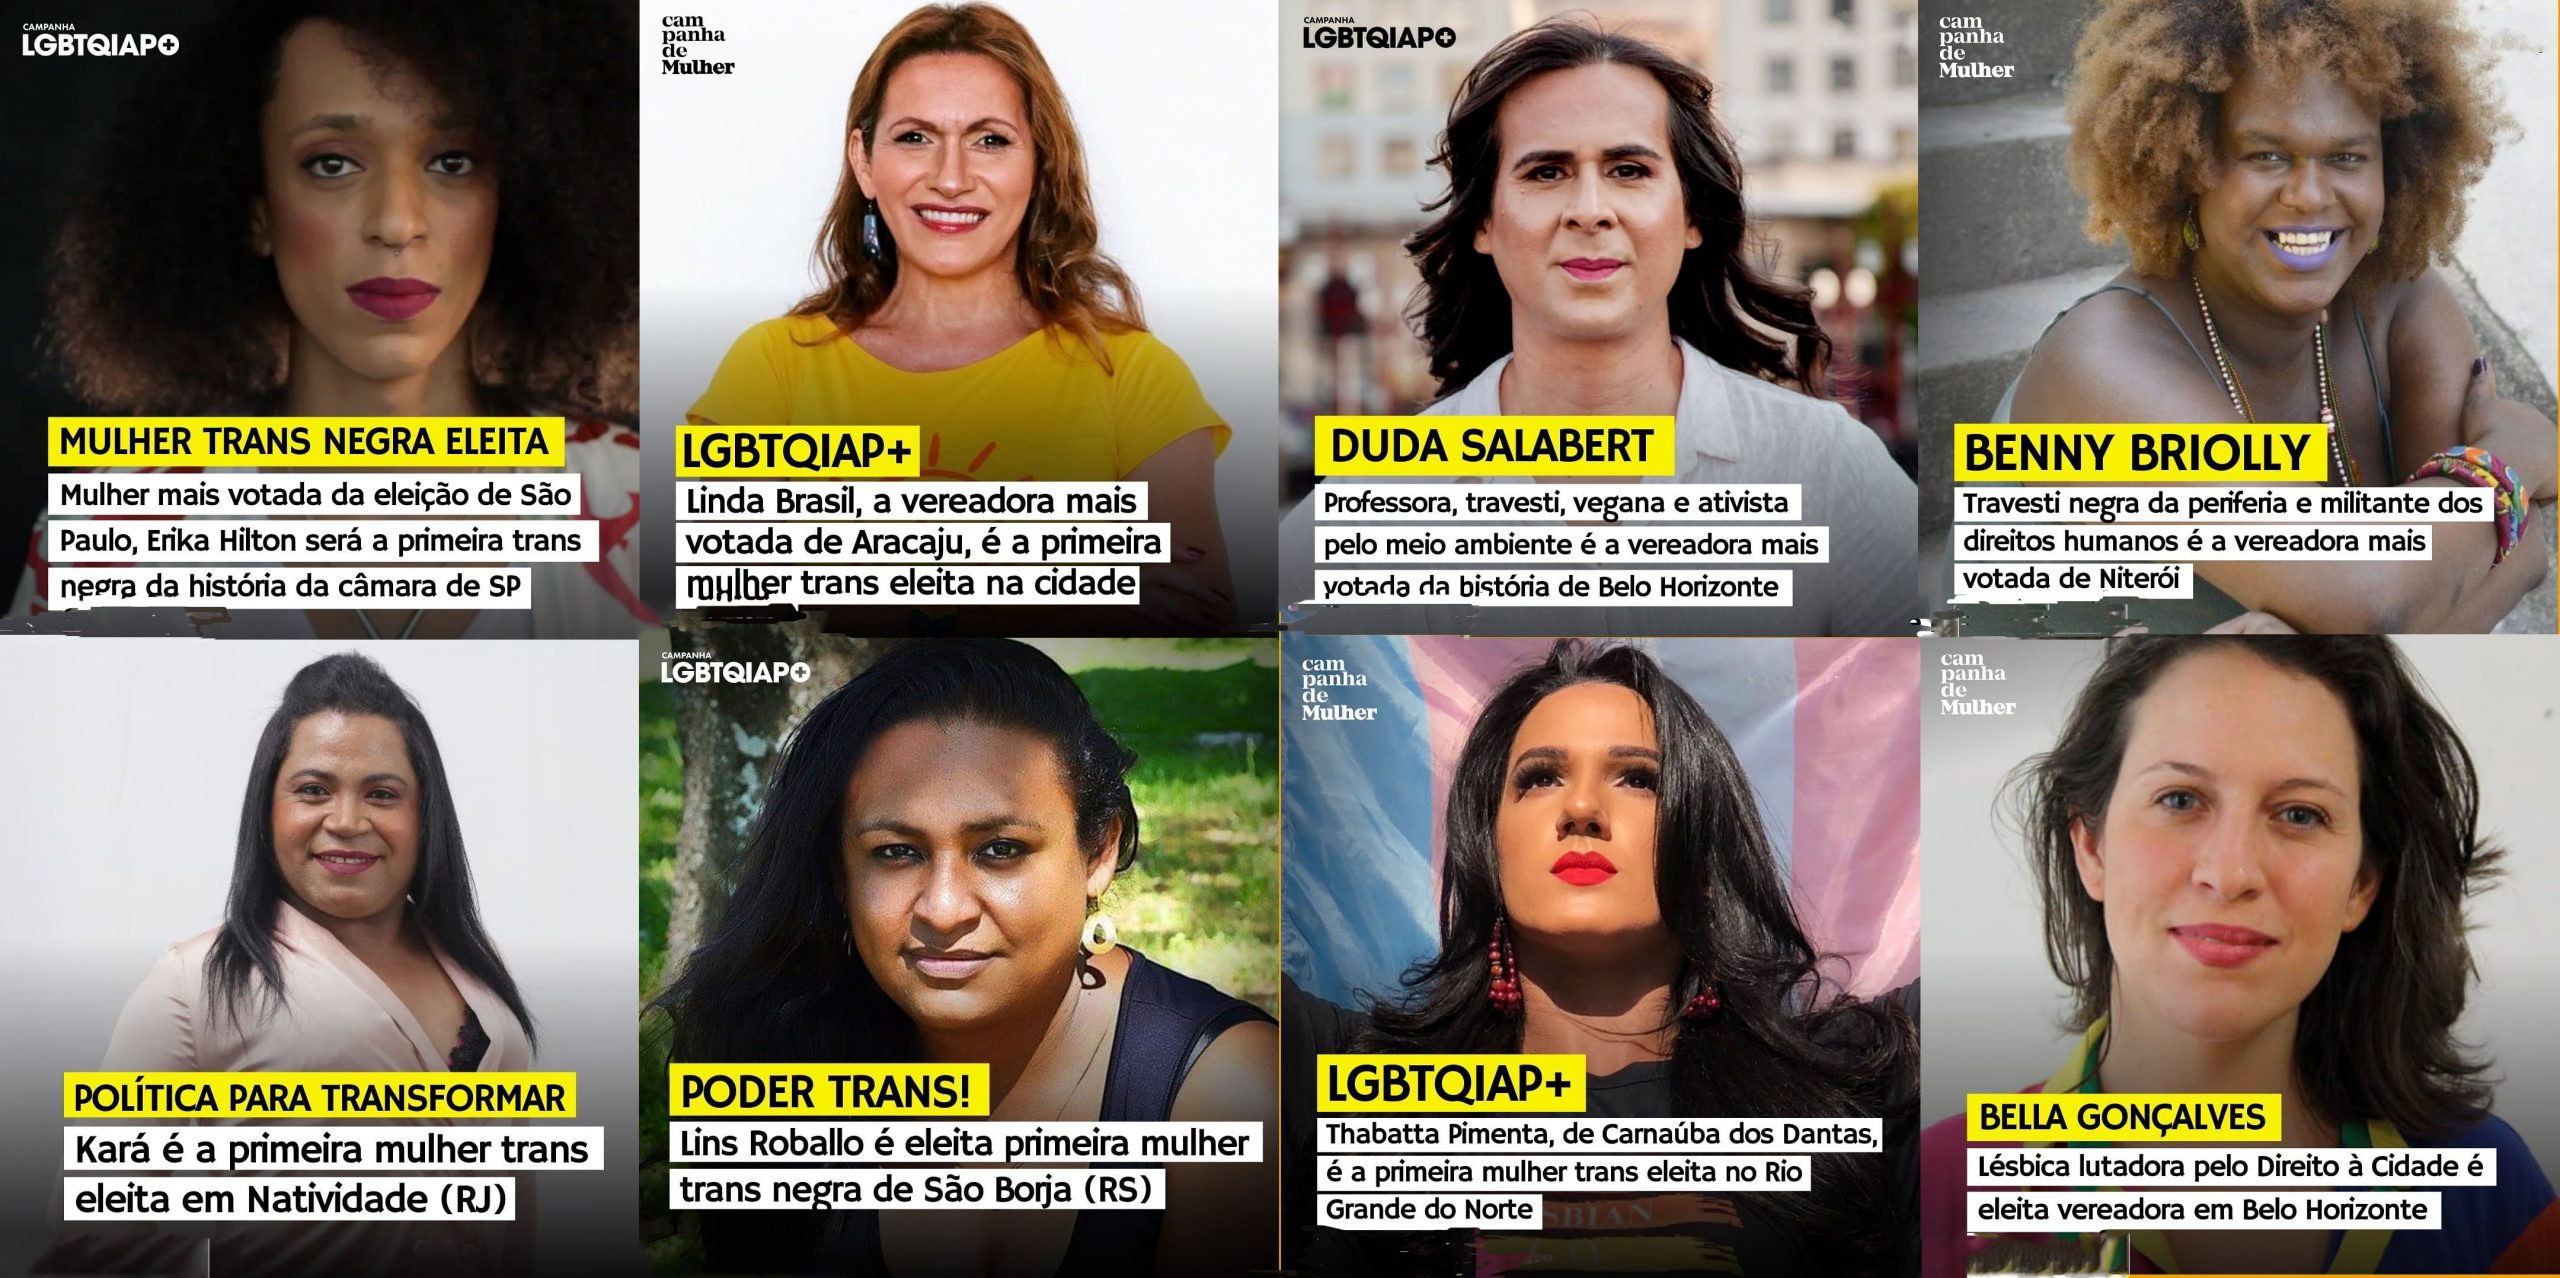 80 LGBTI+ são eleitos para a vereança no Brasil em votação histórica